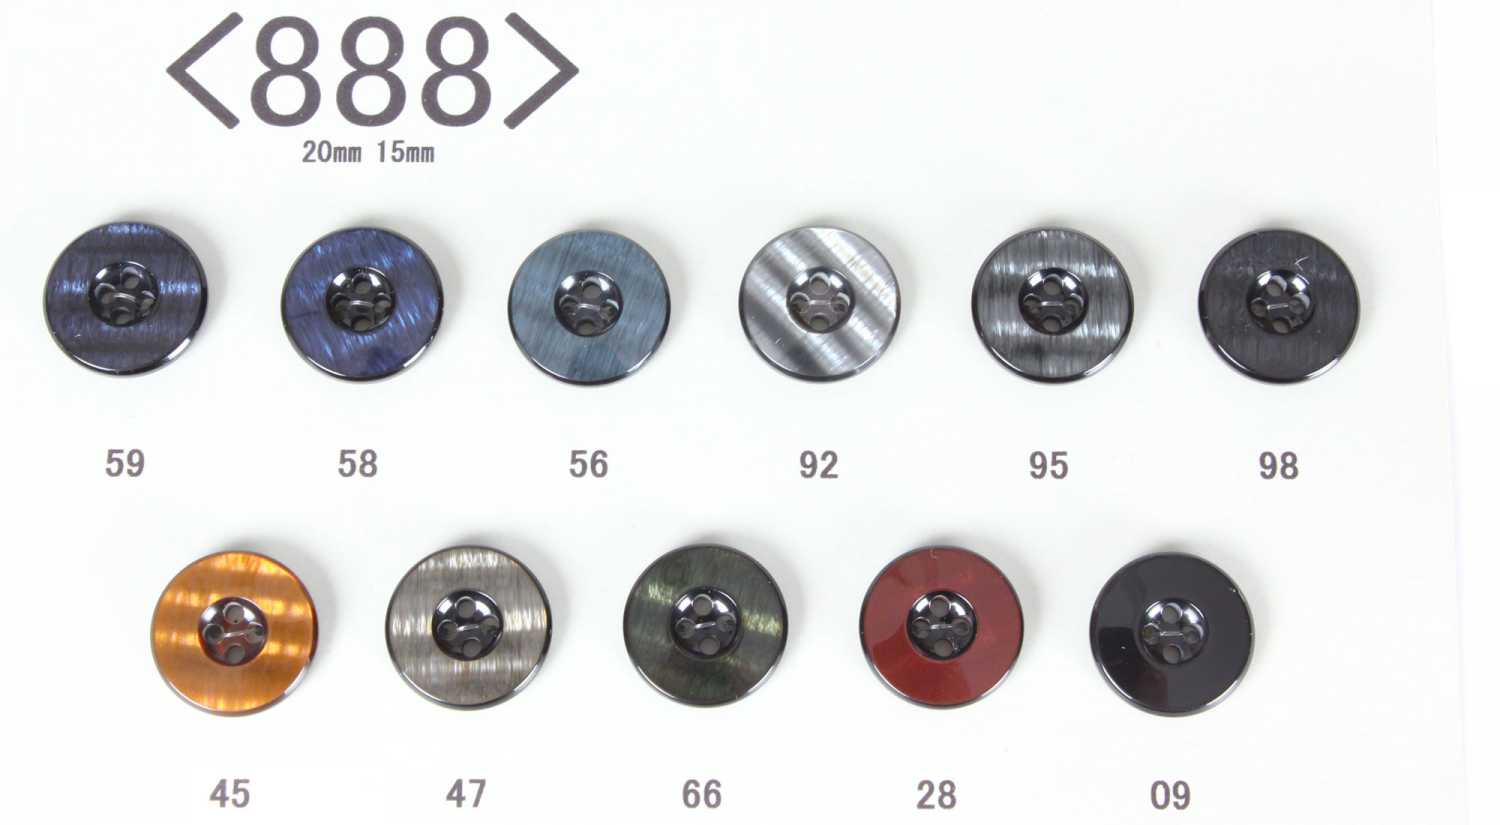 888 FLIGHT Bottoni In Poliestere Per Abiti Domestici E Giacche[Pulsante]